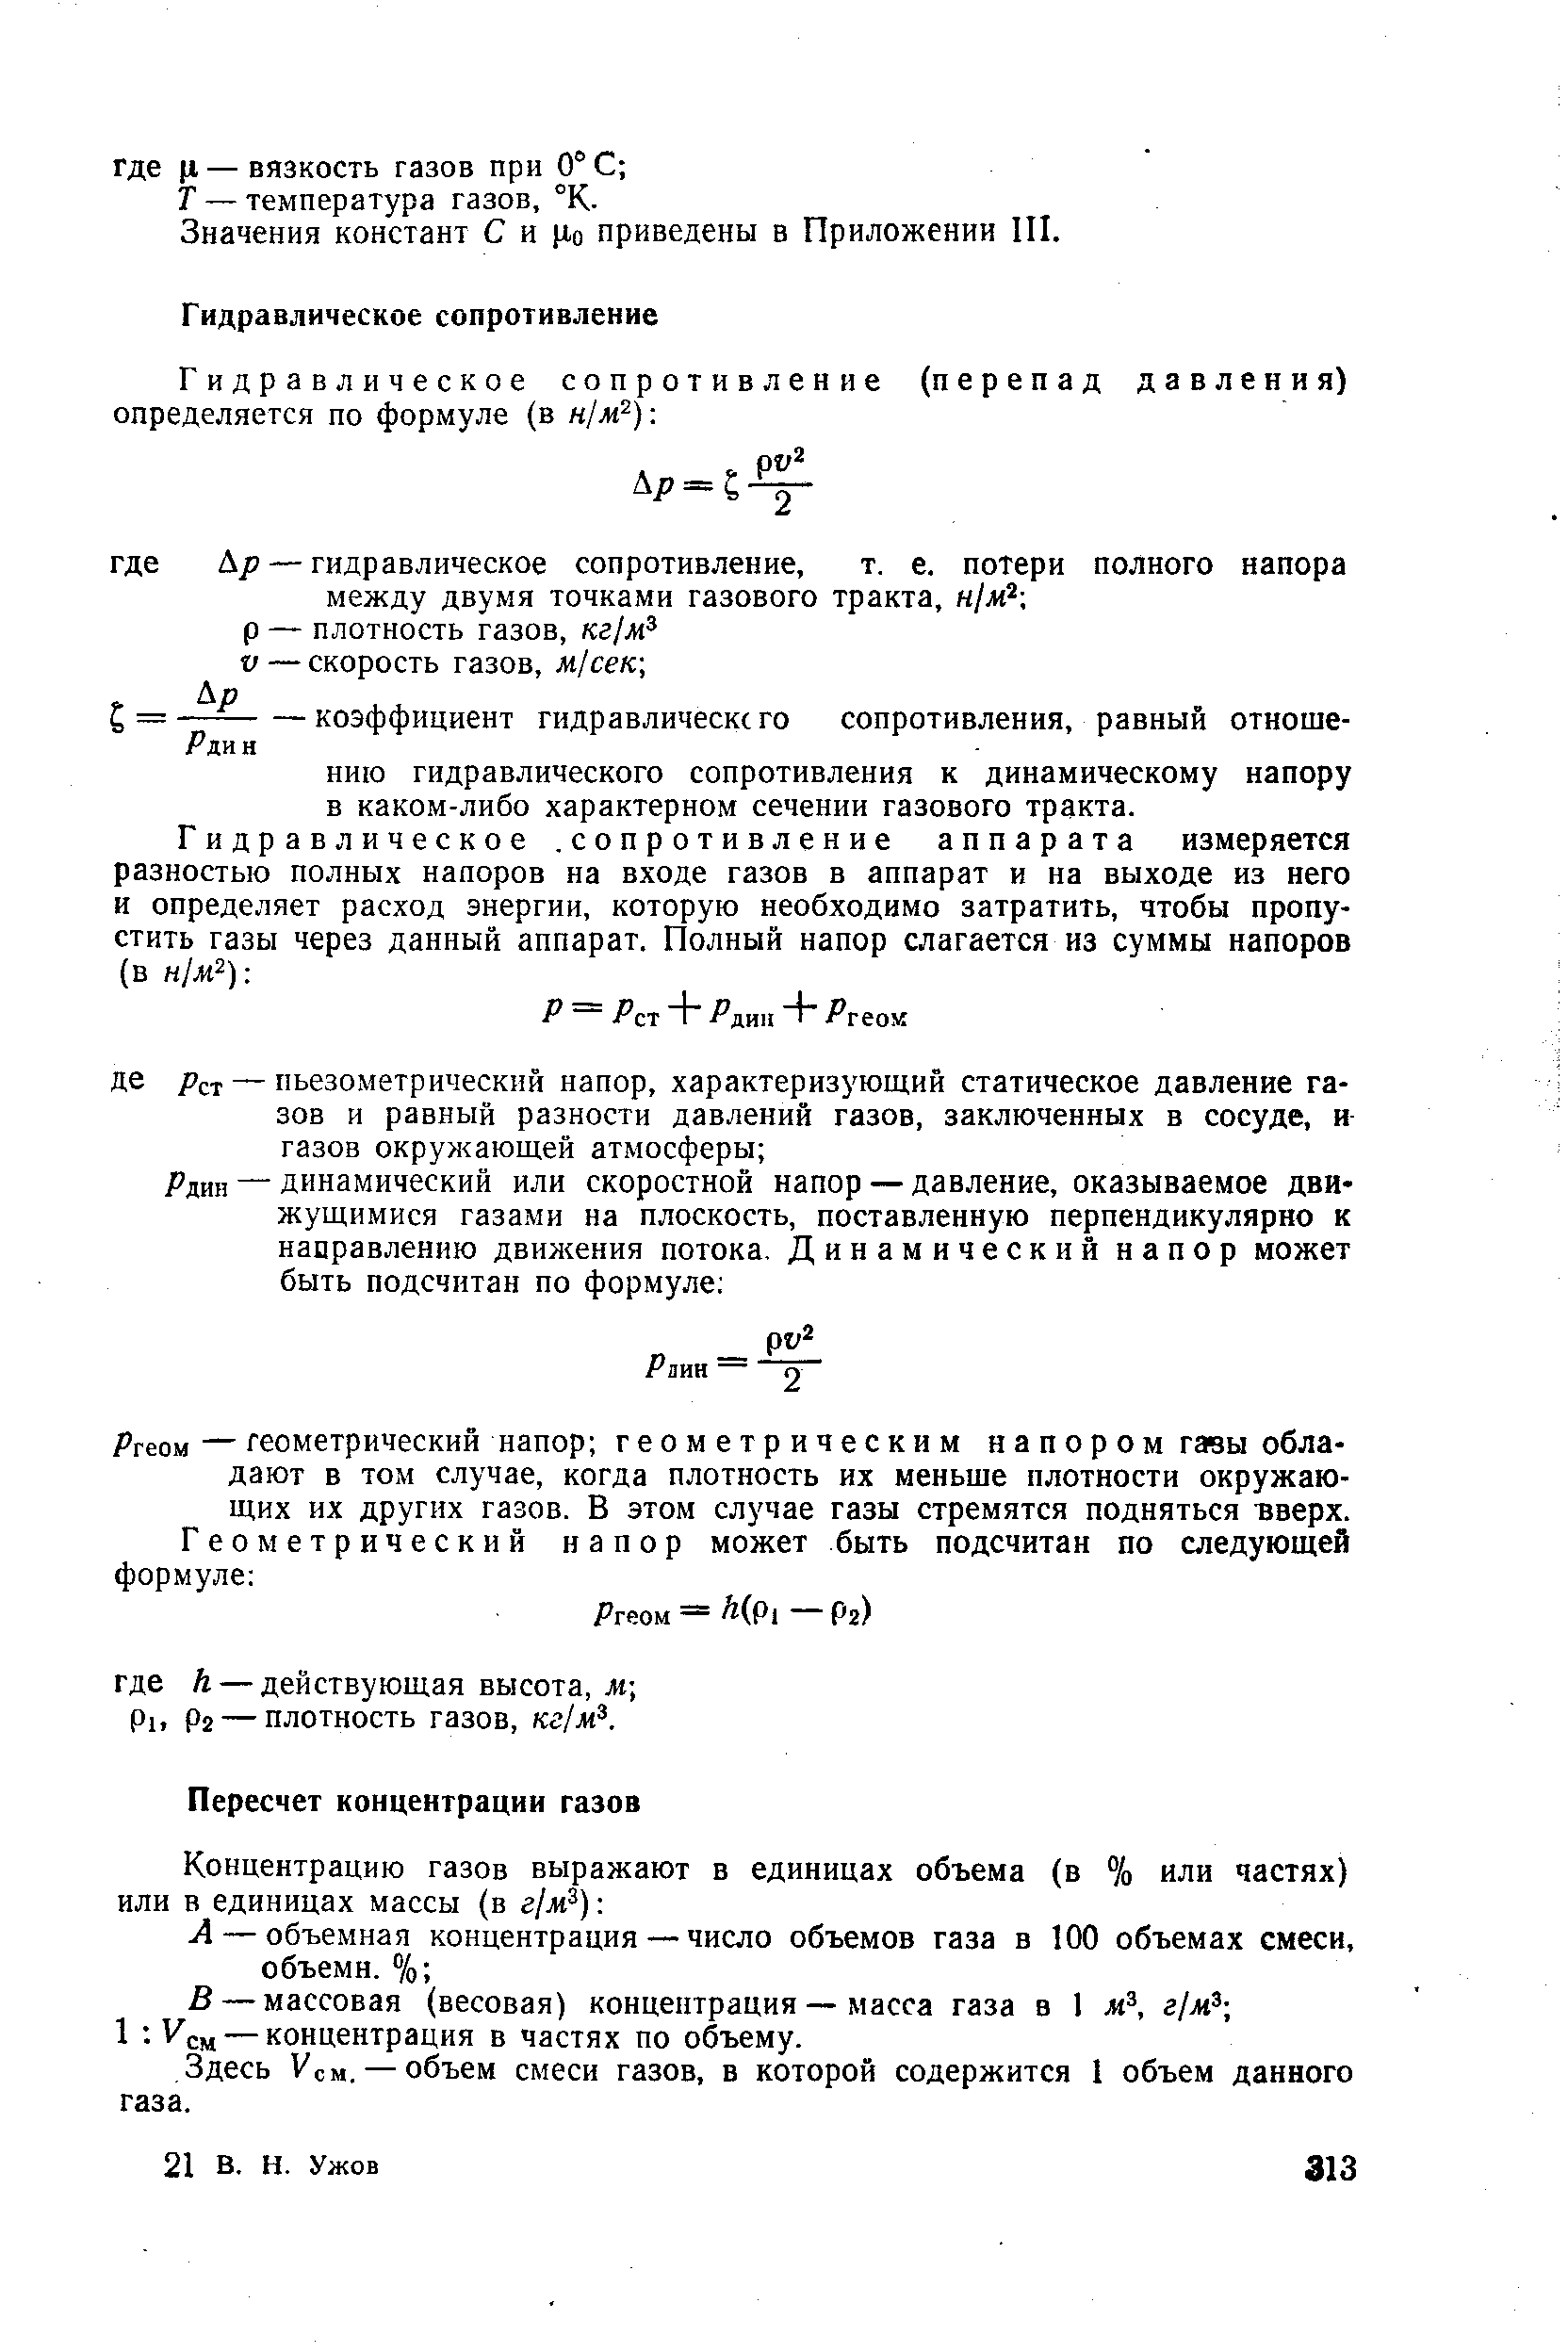 Значения констант С и Цо приведены в Приложении П1.